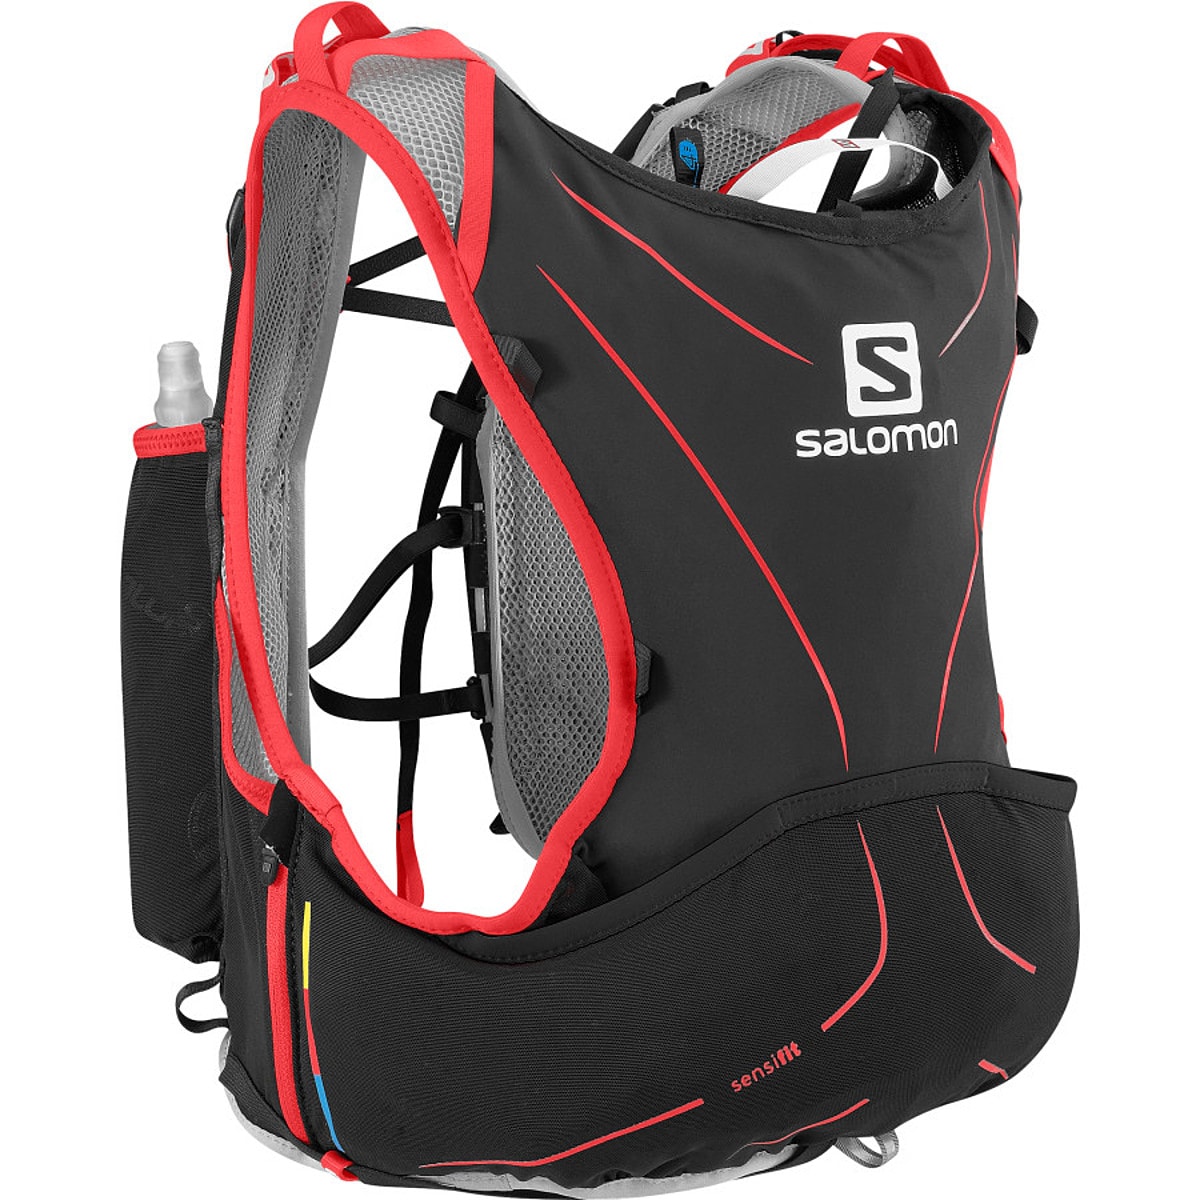 Salomon Advanced Skin 5 Pack Set - 305cu in - Hike Camp